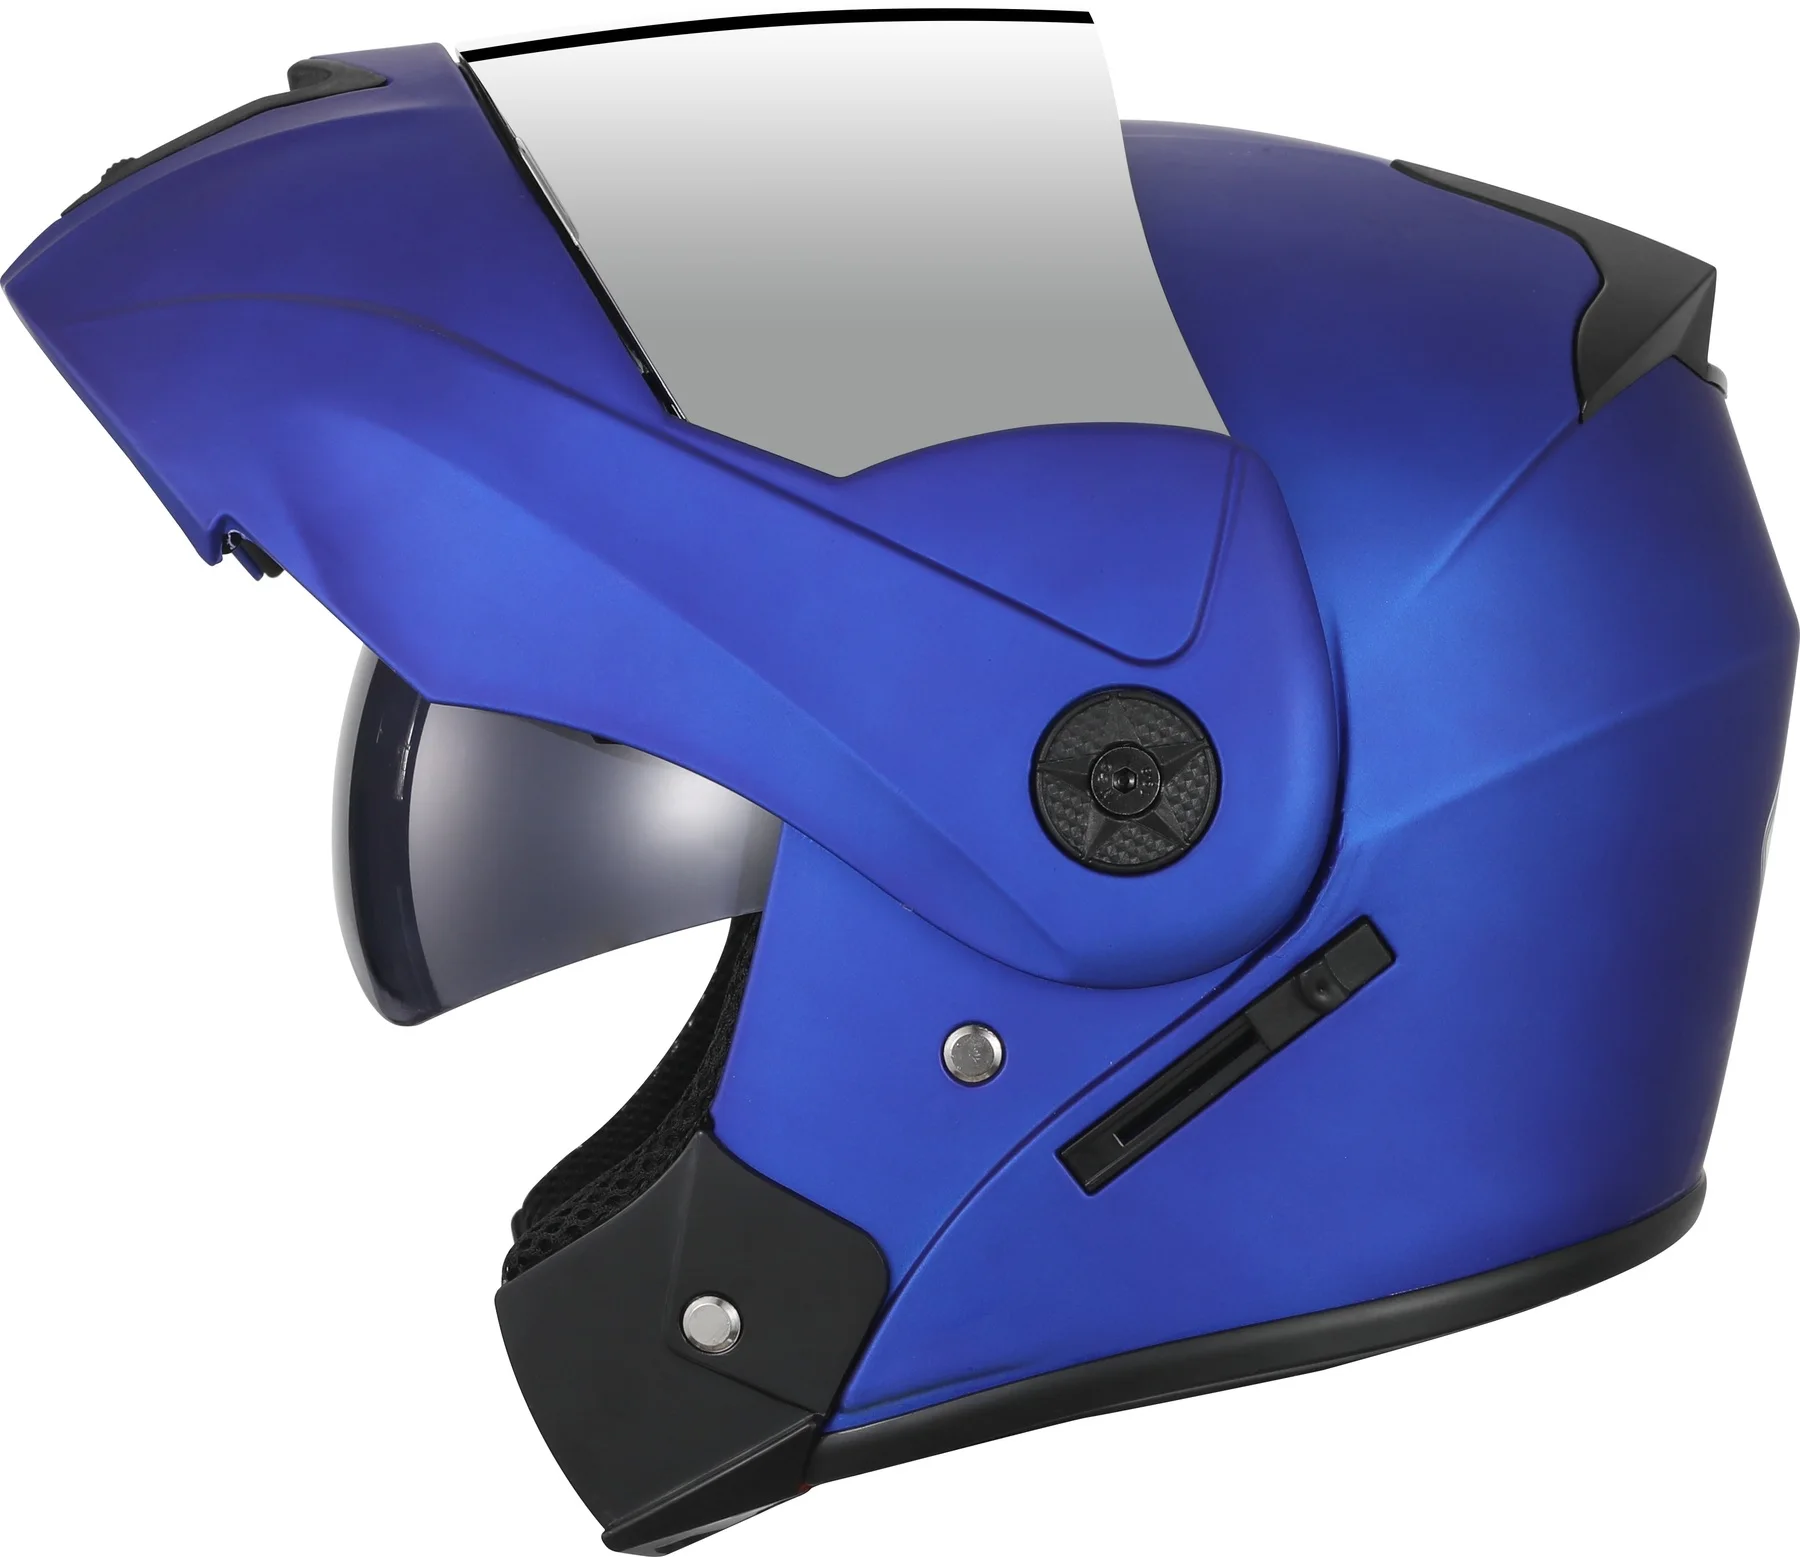 

Мотоциклетный шлем DAYU, защитный шлем для мотокросса, с двойными стеклами, для гонок